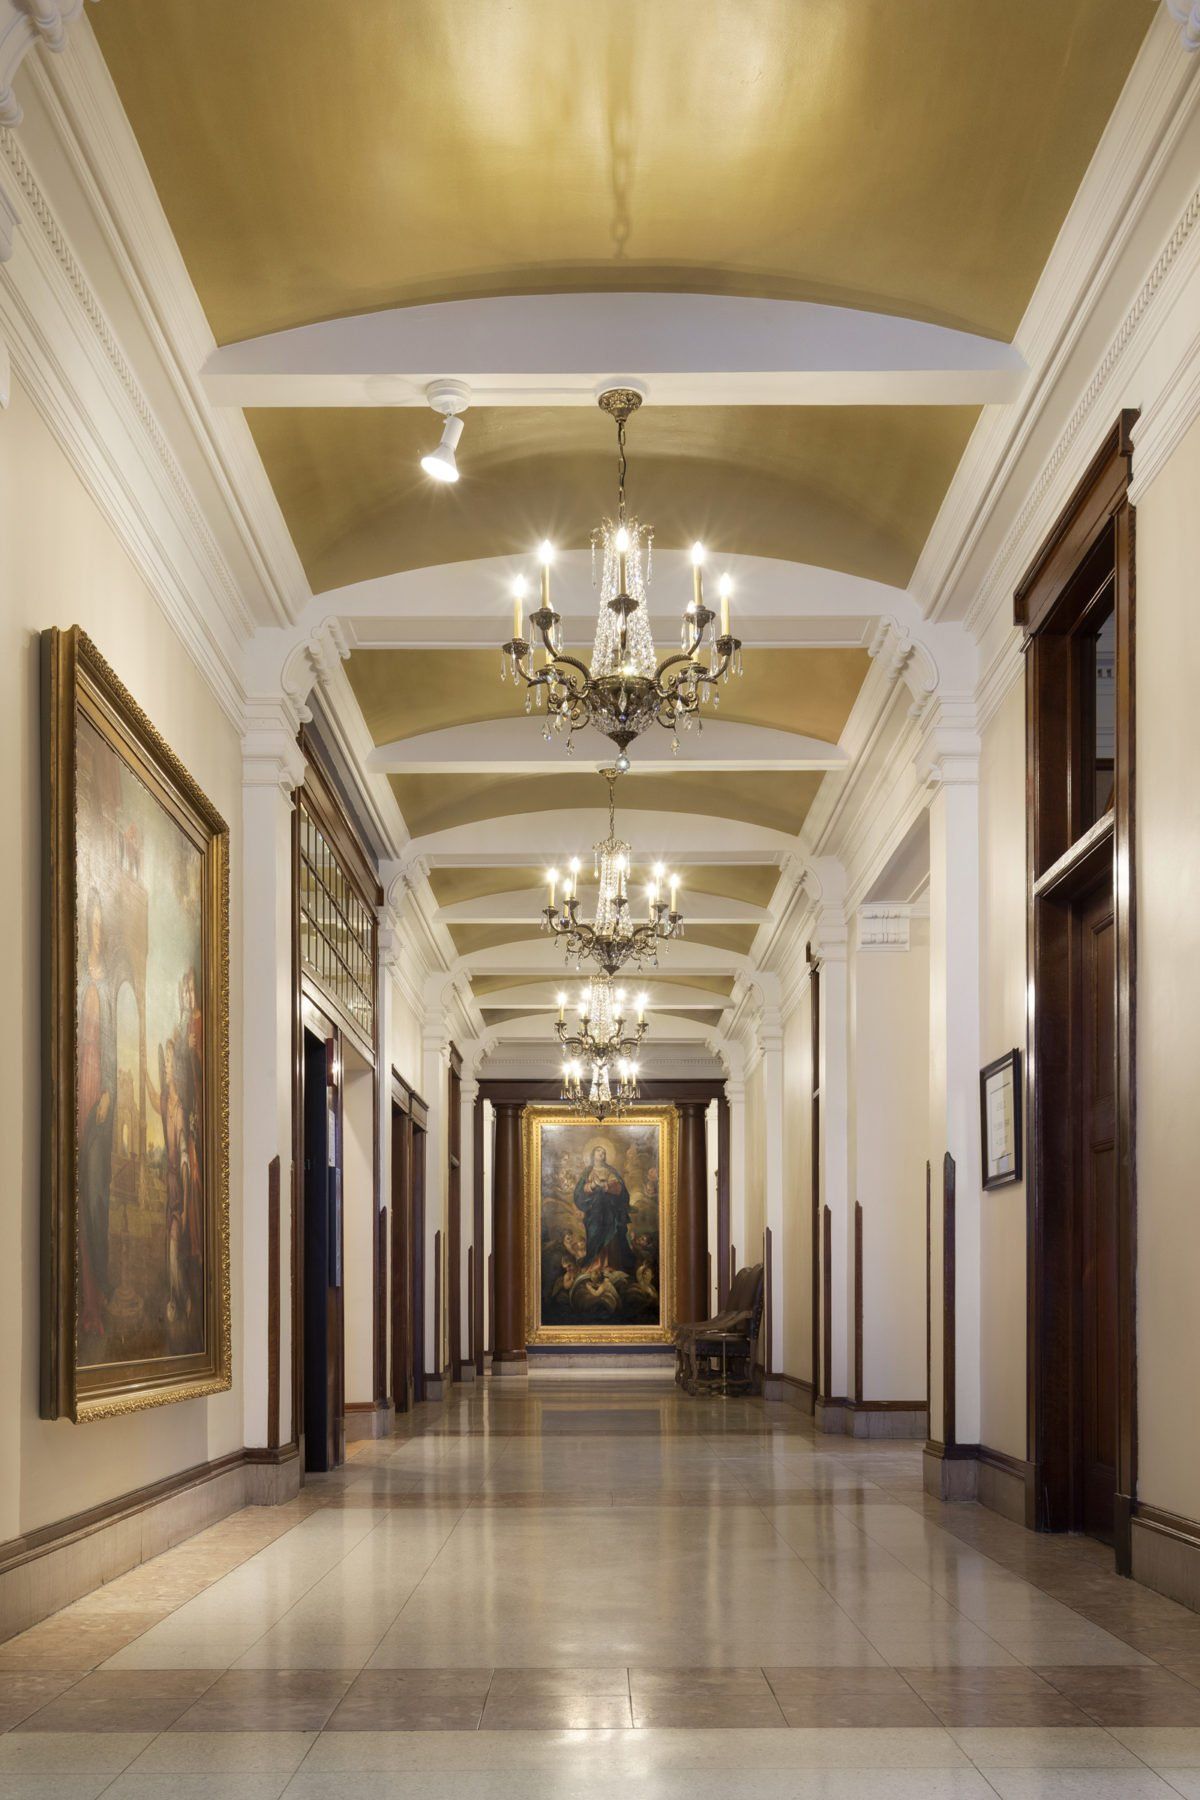 Grand hotel corridor